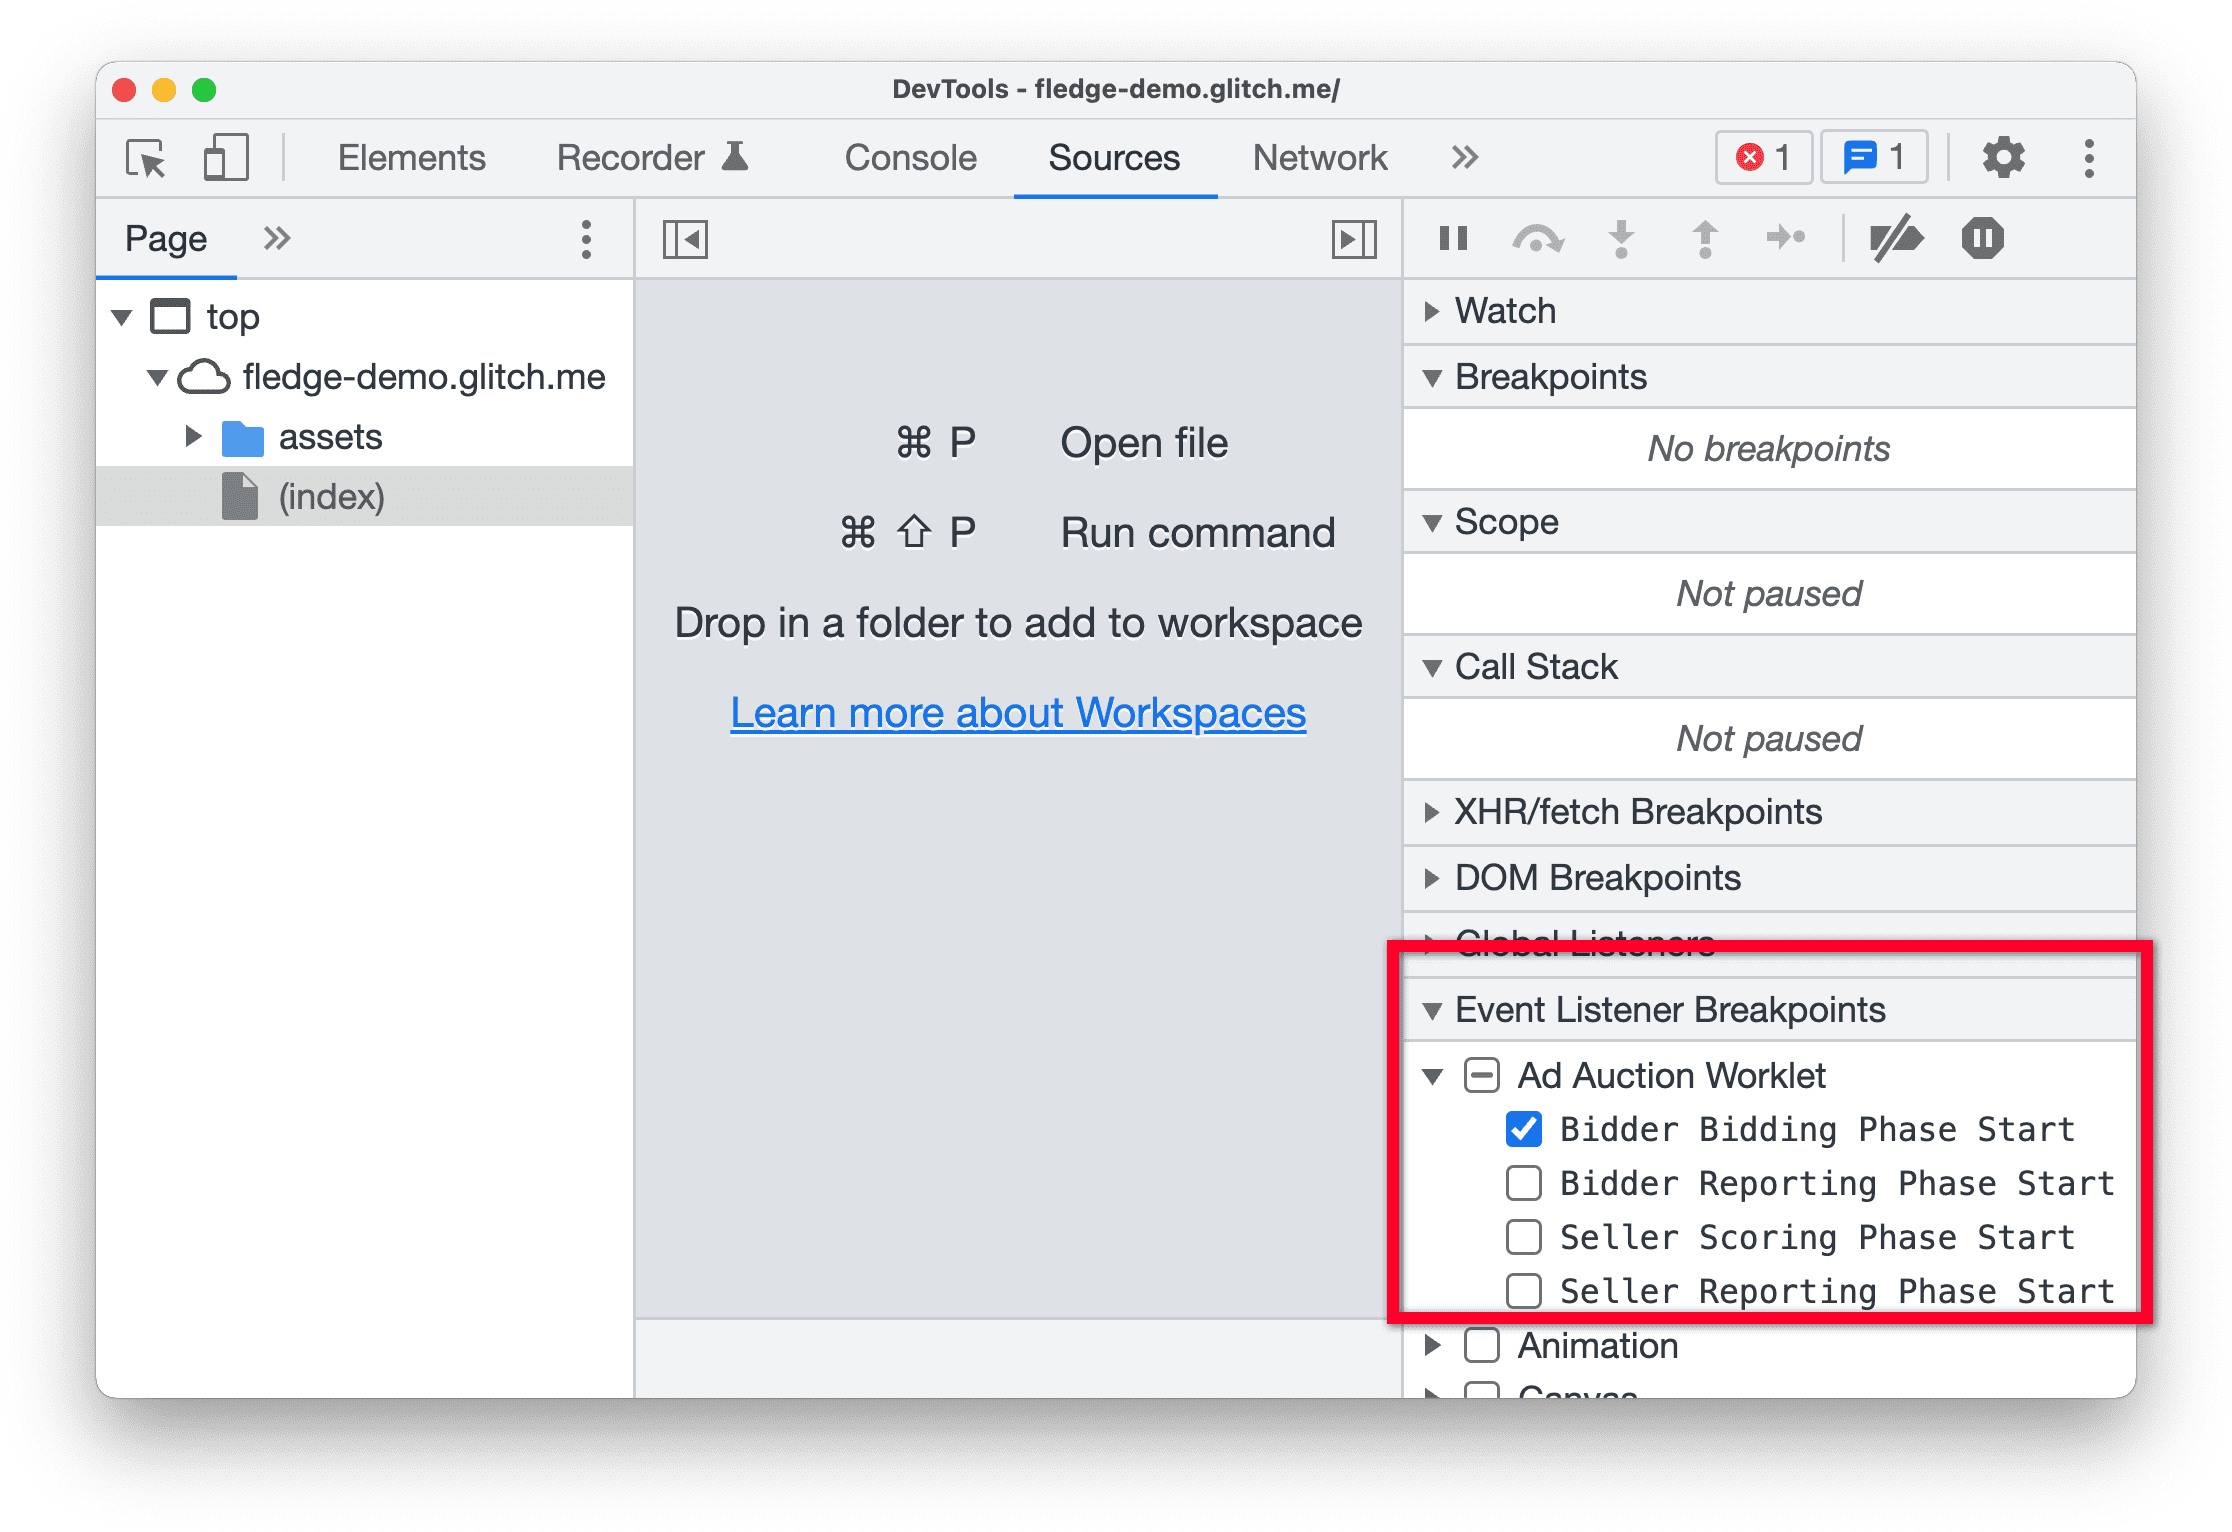 צילום מסך של
   כלי הפיתוח ב-Chrome Canary, עם הדגשת החלונית Event Listener Breakpoints בחלונית Sources.
   &#39;שלב ההתחלה של הבידינג של מגיש הצעות המחיר&#39; נבחר בקטע worklet של מכרז מודעות.